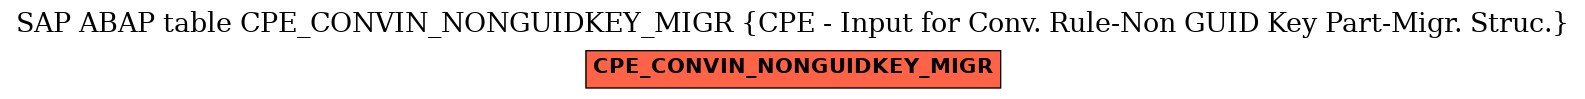 E-R Diagram for table CPE_CONVIN_NONGUIDKEY_MIGR (CPE - Input for Conv. Rule-Non GUID Key Part-Migr. Struc.)